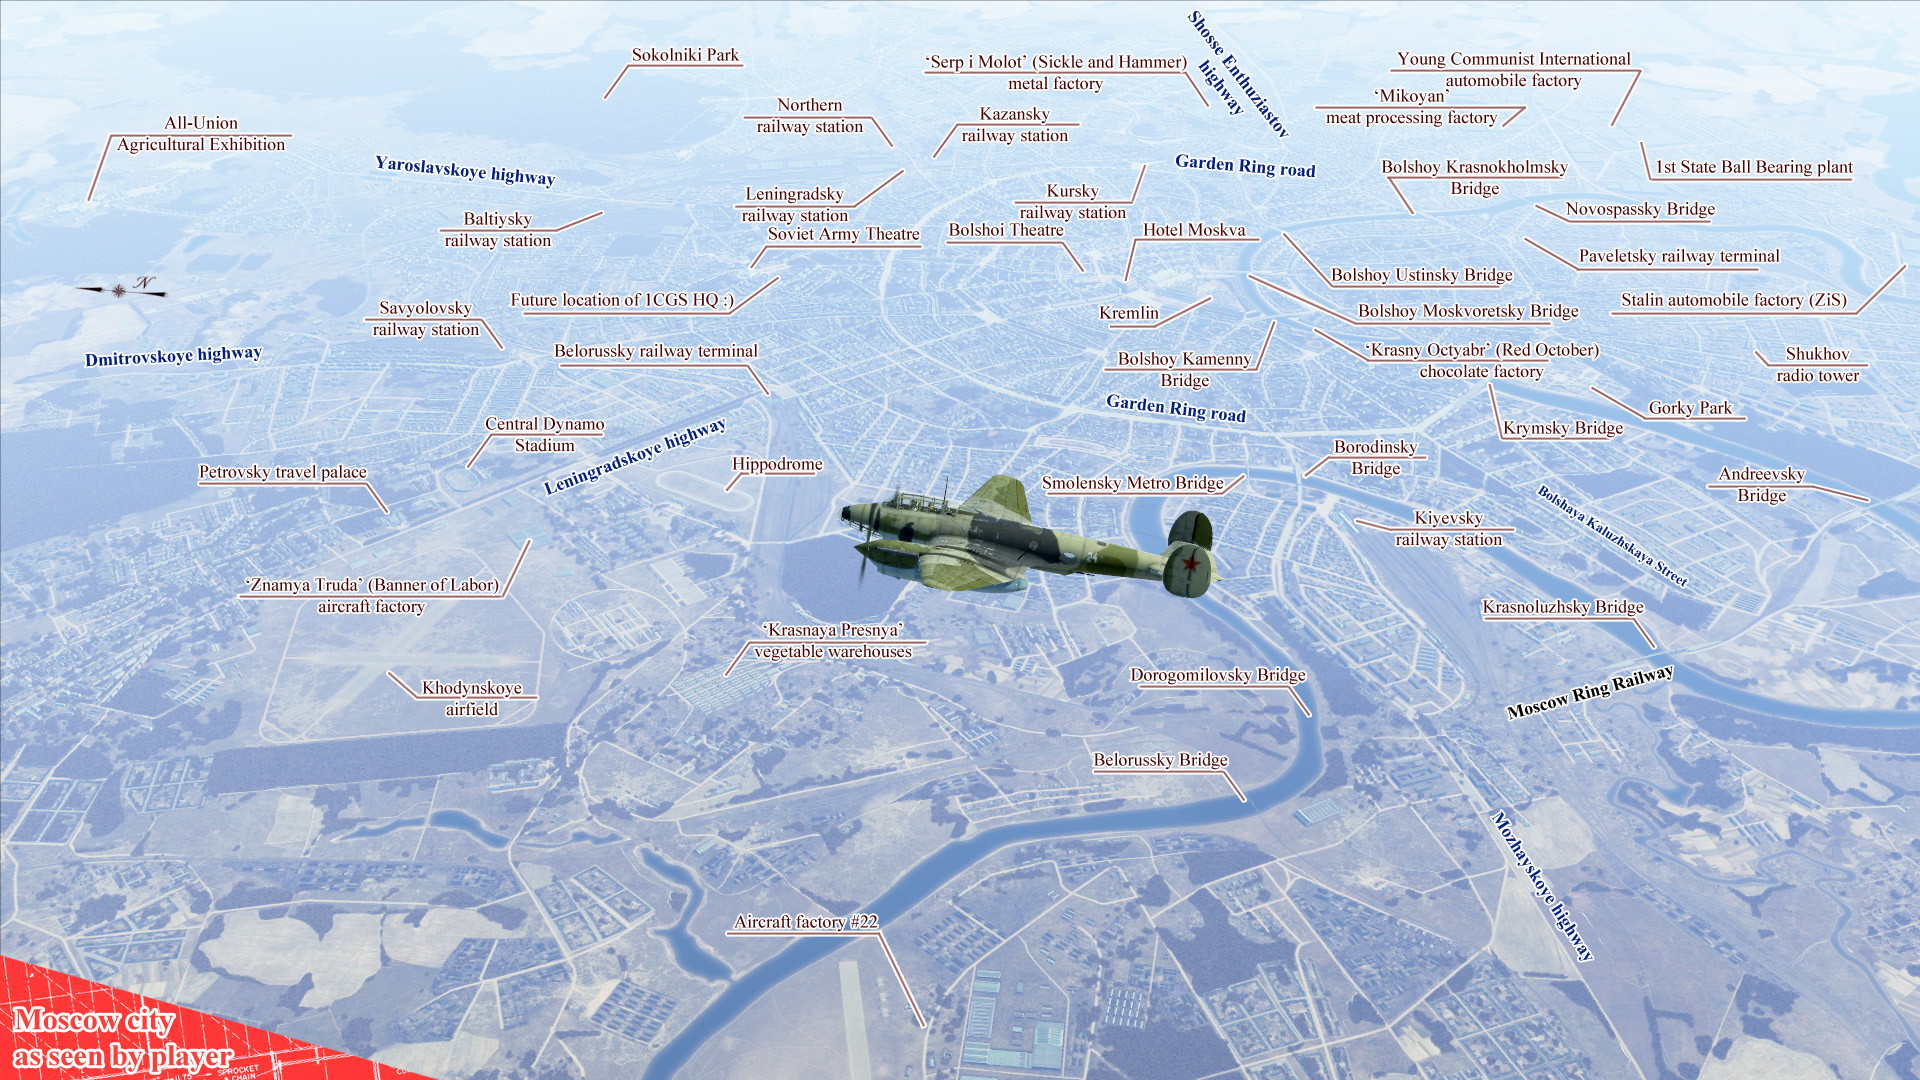 IL-2 Sturmovik: Battle of Moscow - screenshot 14